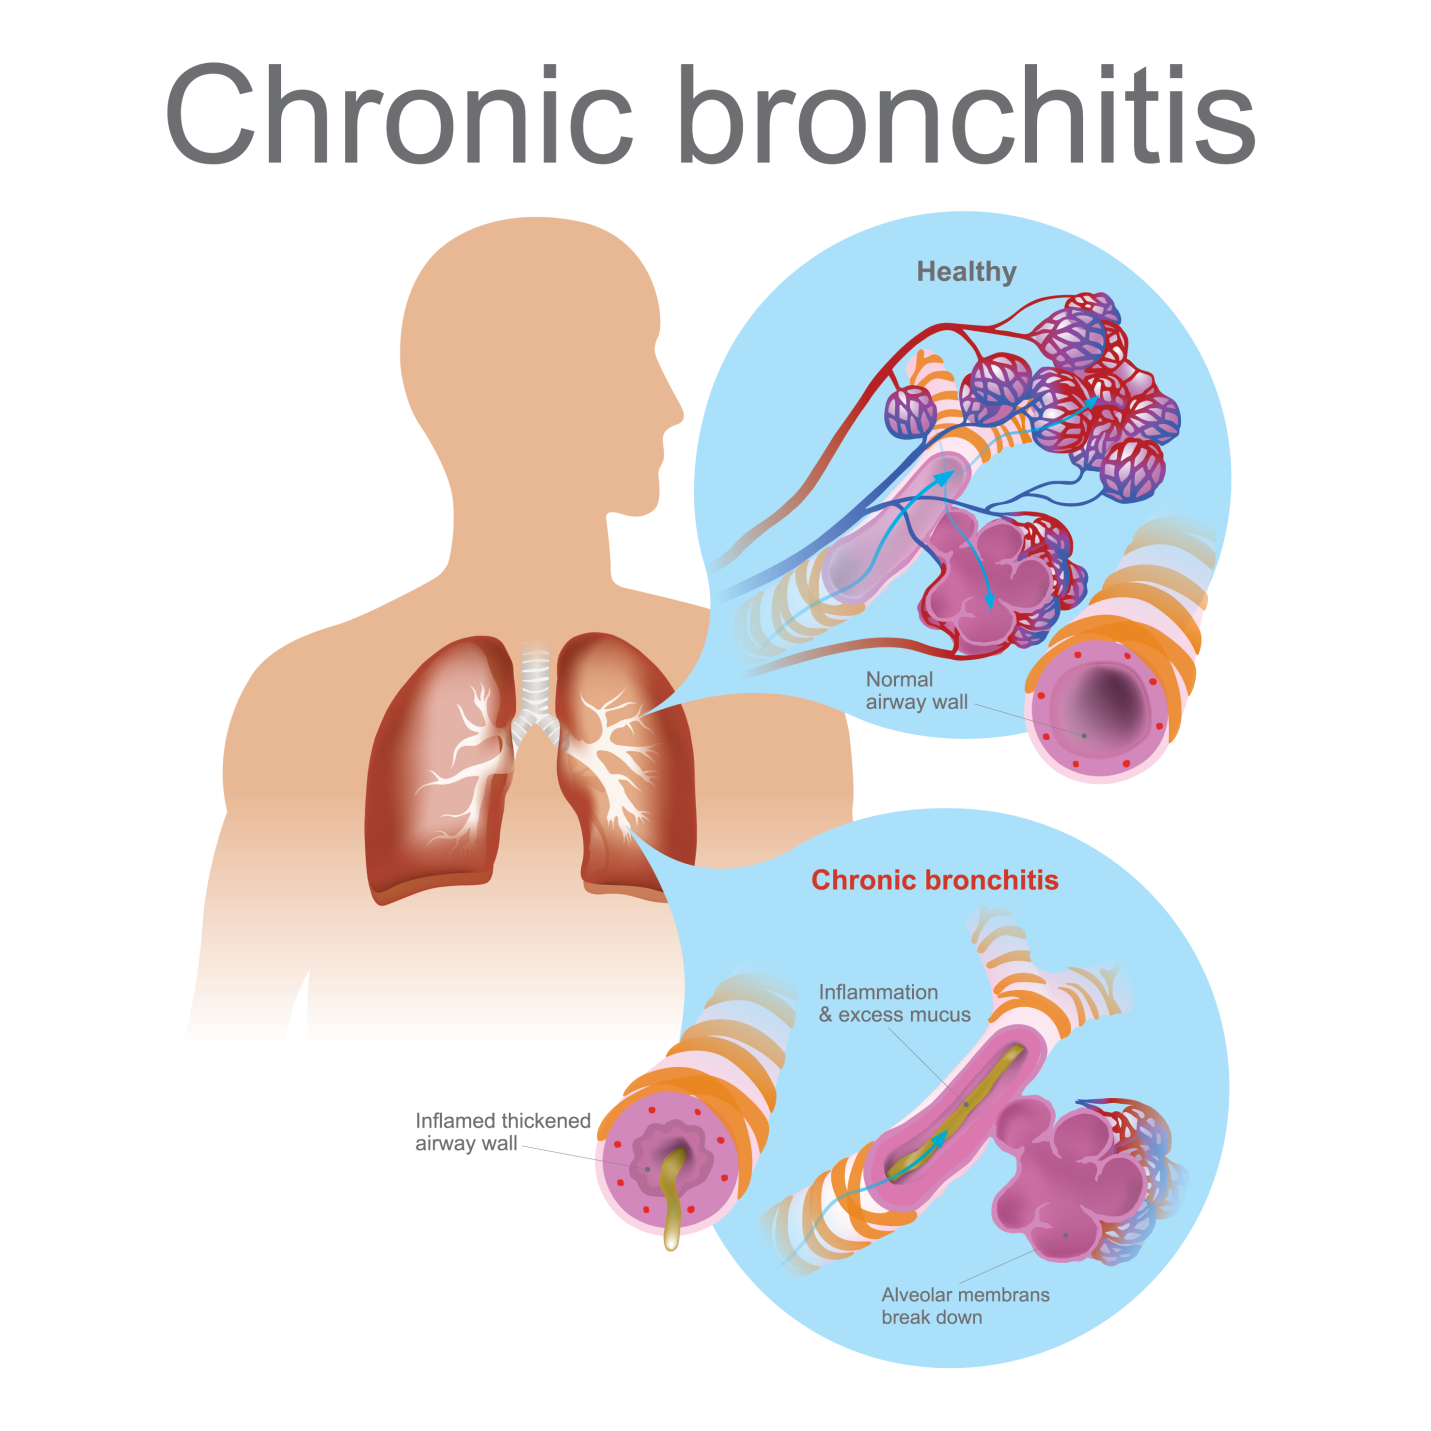 bronchitis presentation